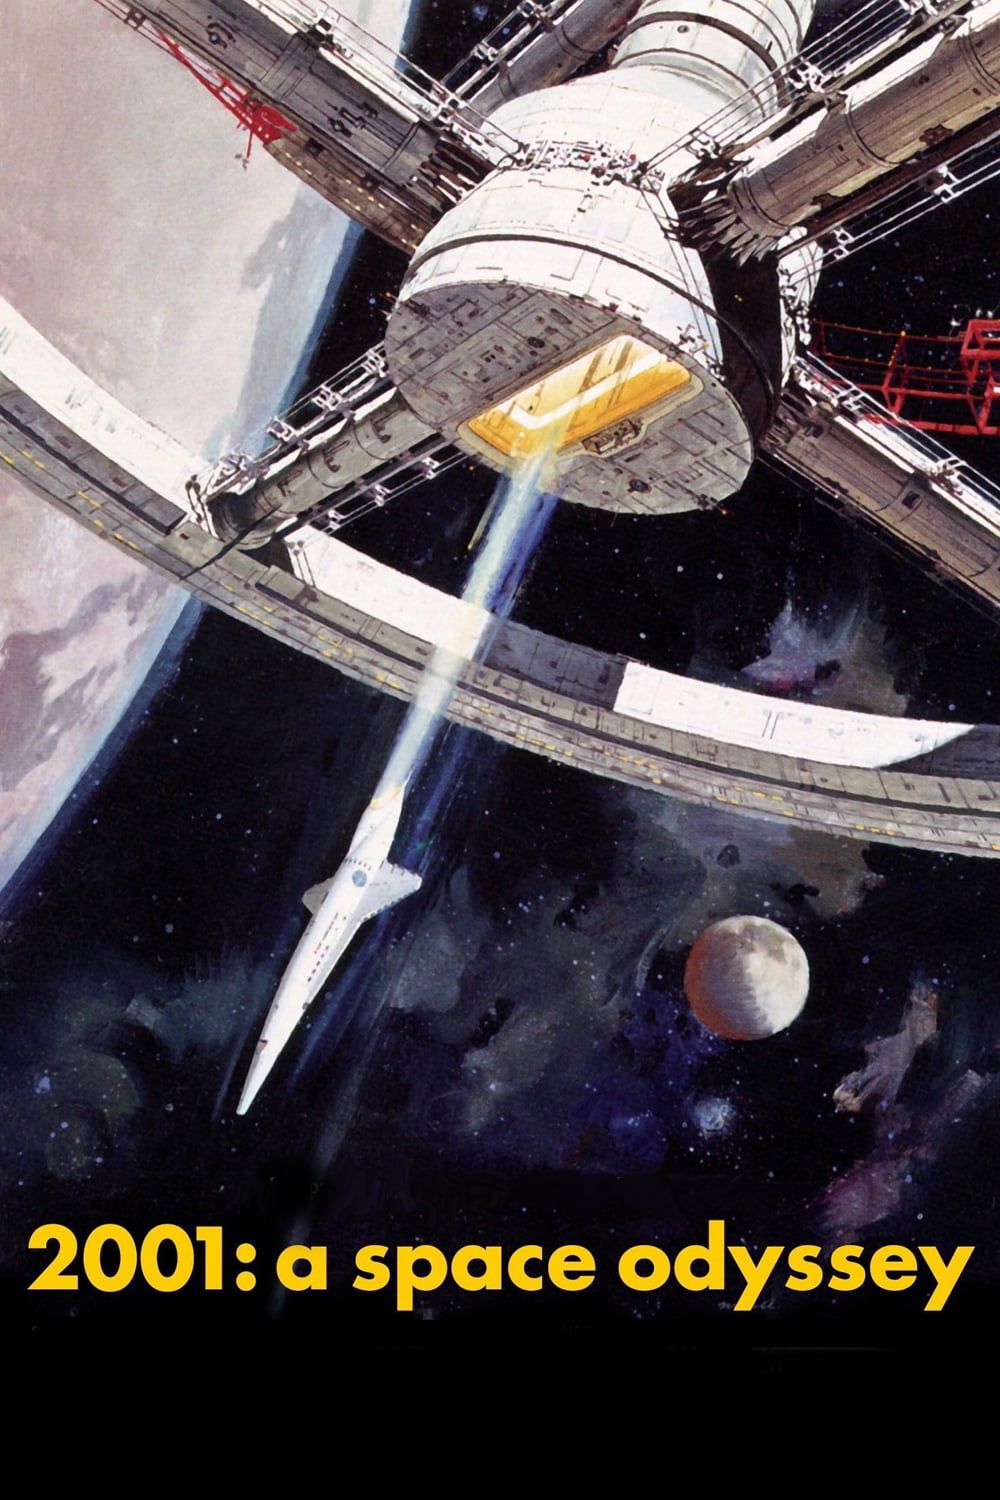 2001: Una odisea en el espacio